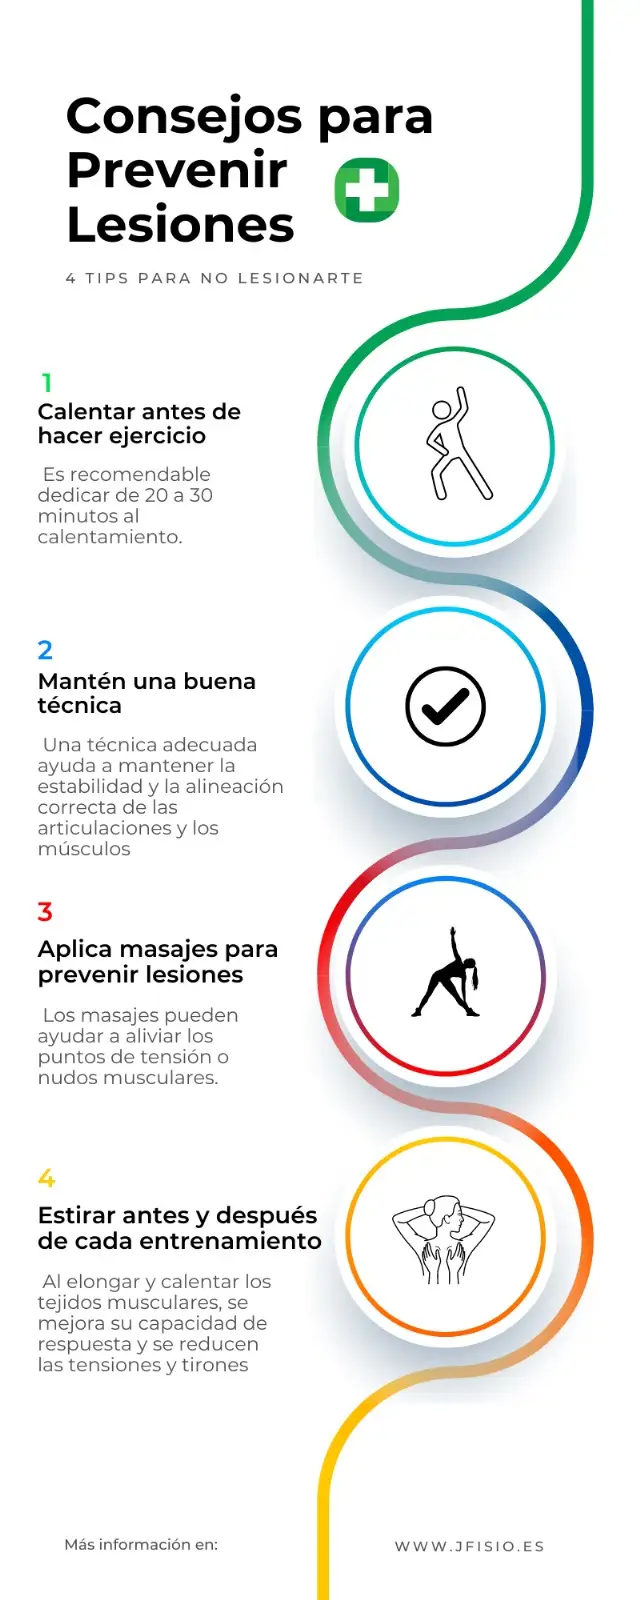 Infografía Consejos para prevenir Lesiones jfisio.es